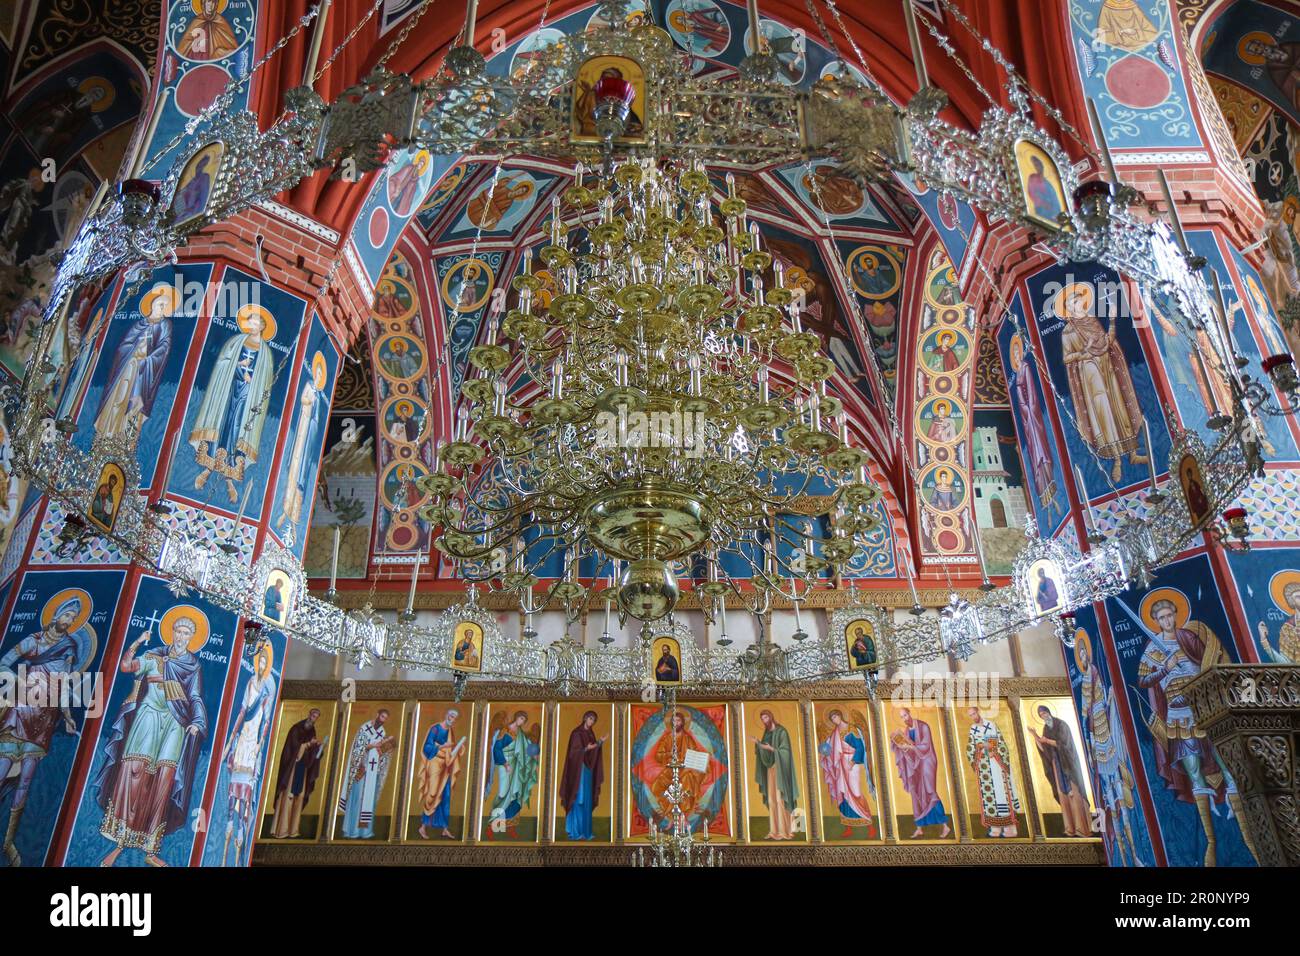 Chandelier à l'intérieur du monastère chrétien orthodoxe oriental Suprasl Lavra en Pologne du XVIe siècle Banque D'Images